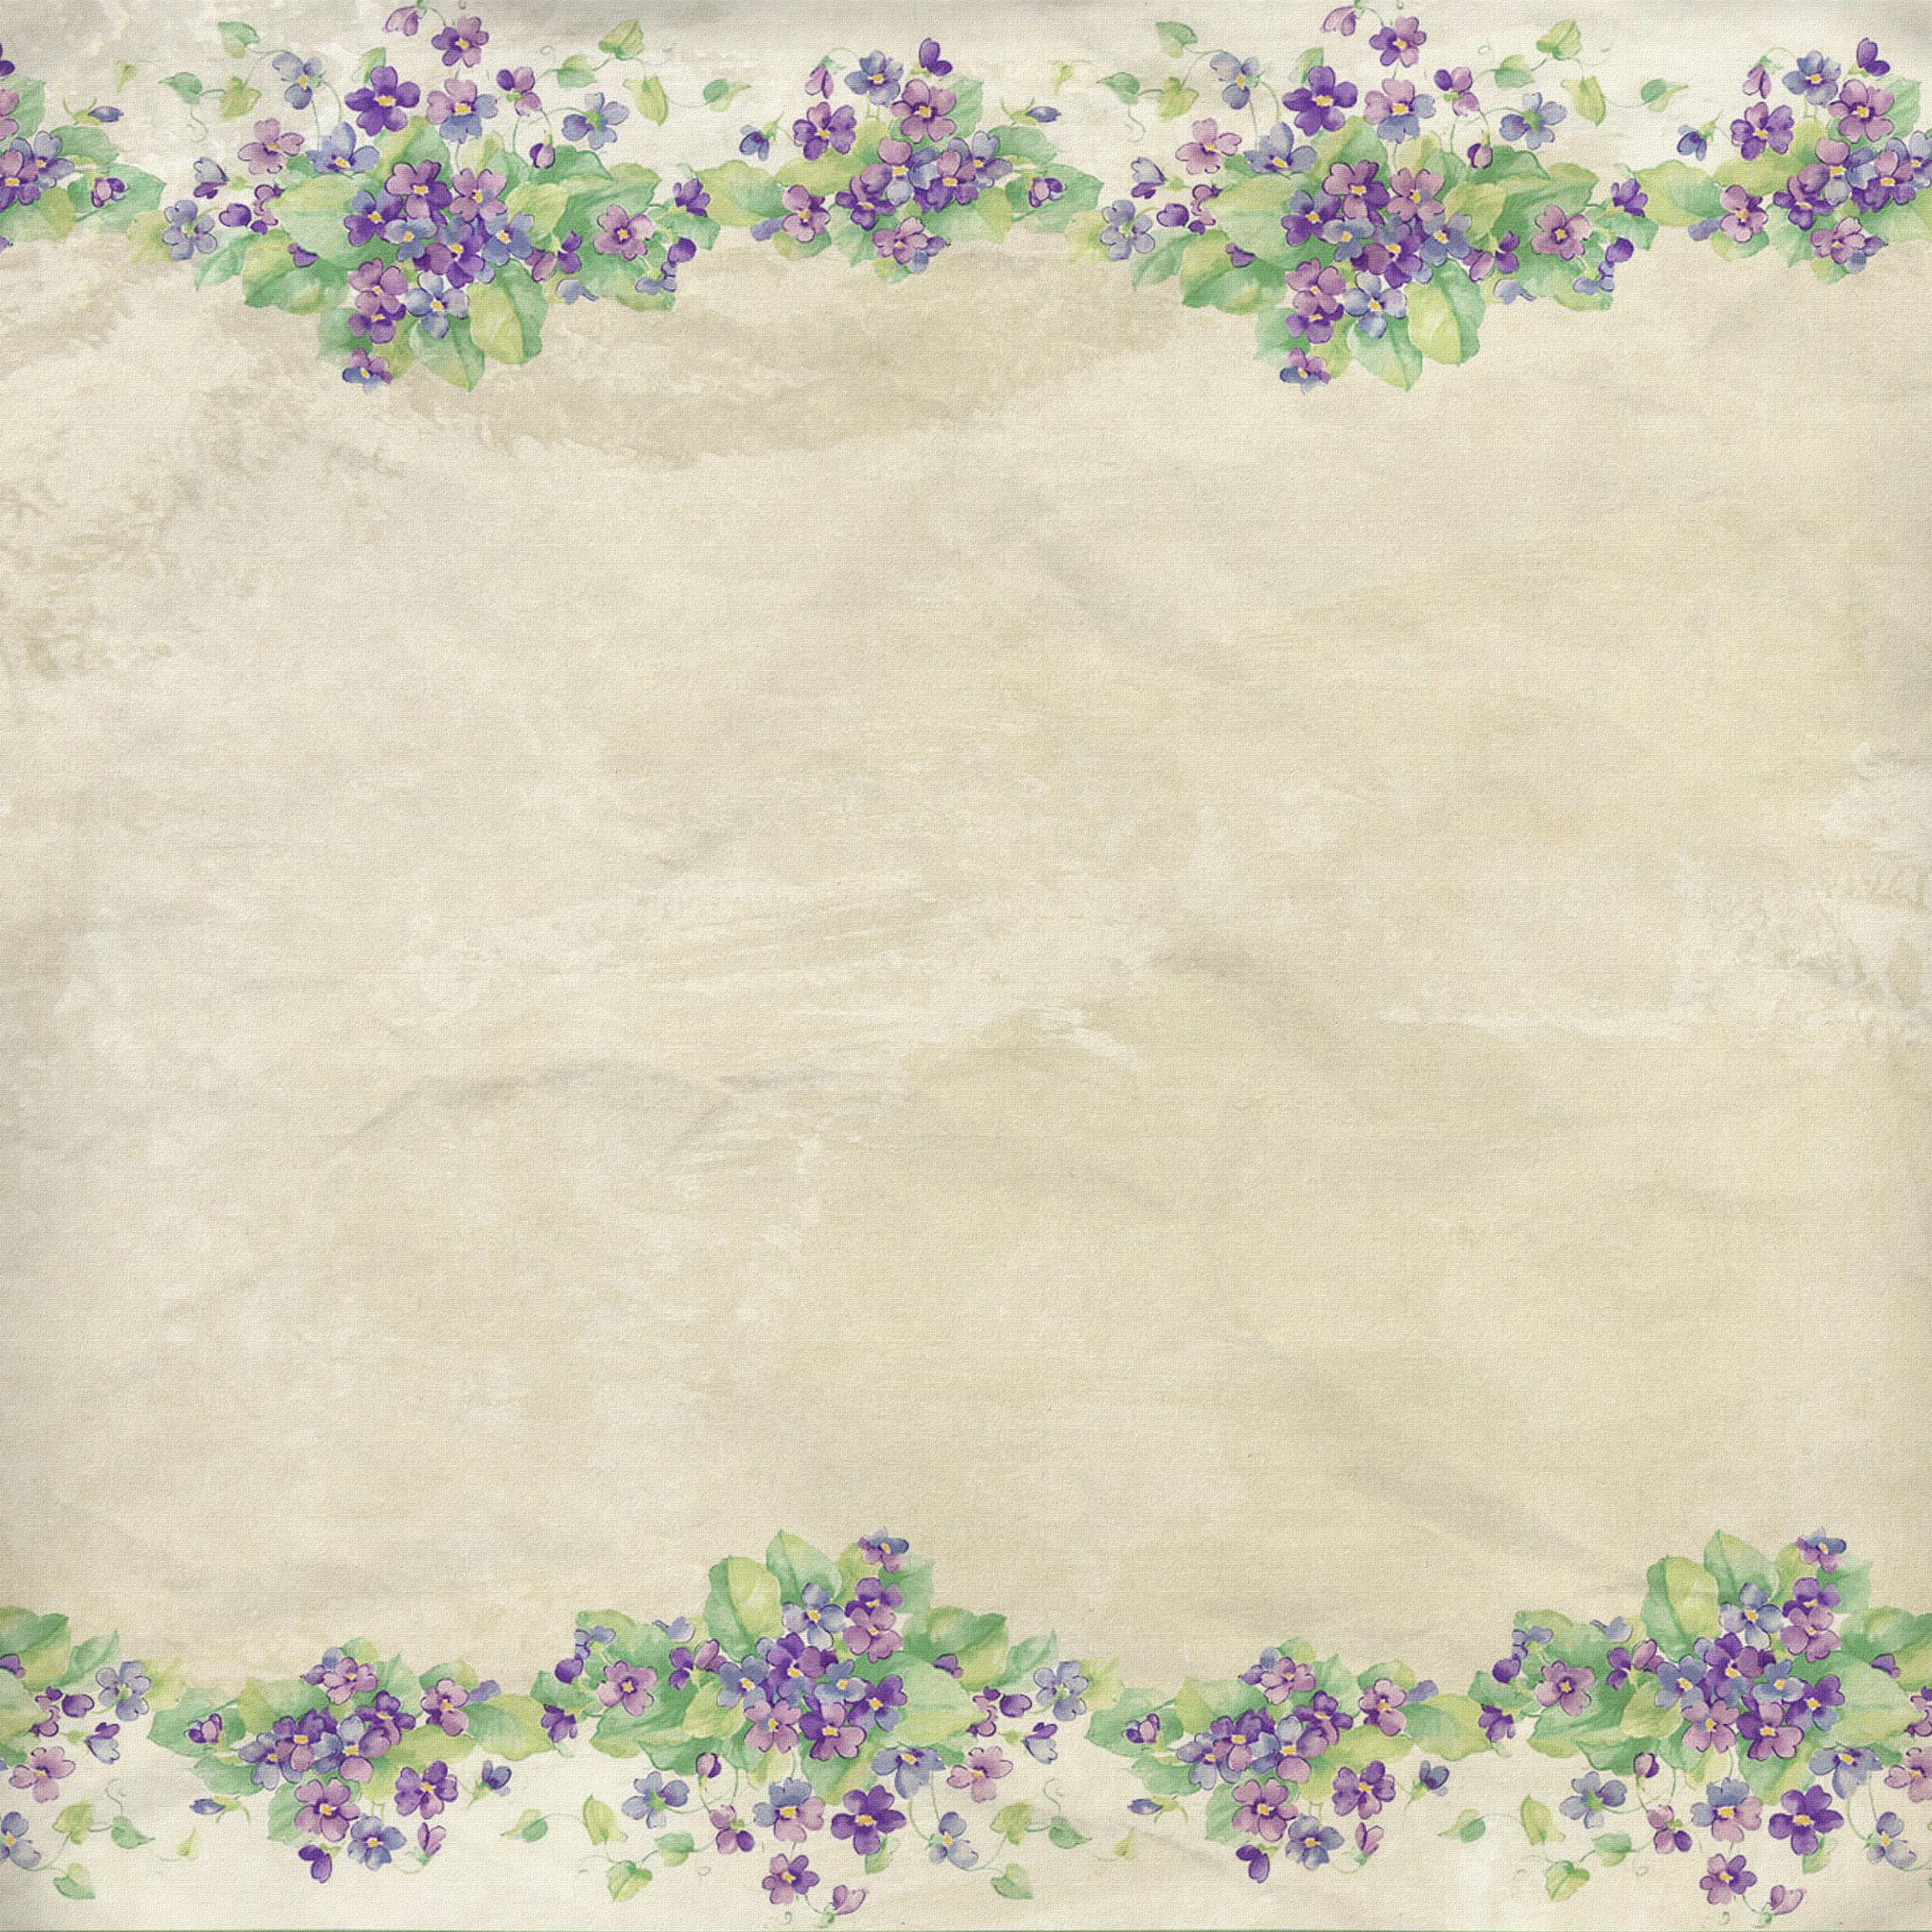 花のイラスト フリー素材 壁紙 背景no 293 紫 草葉 レトロ調